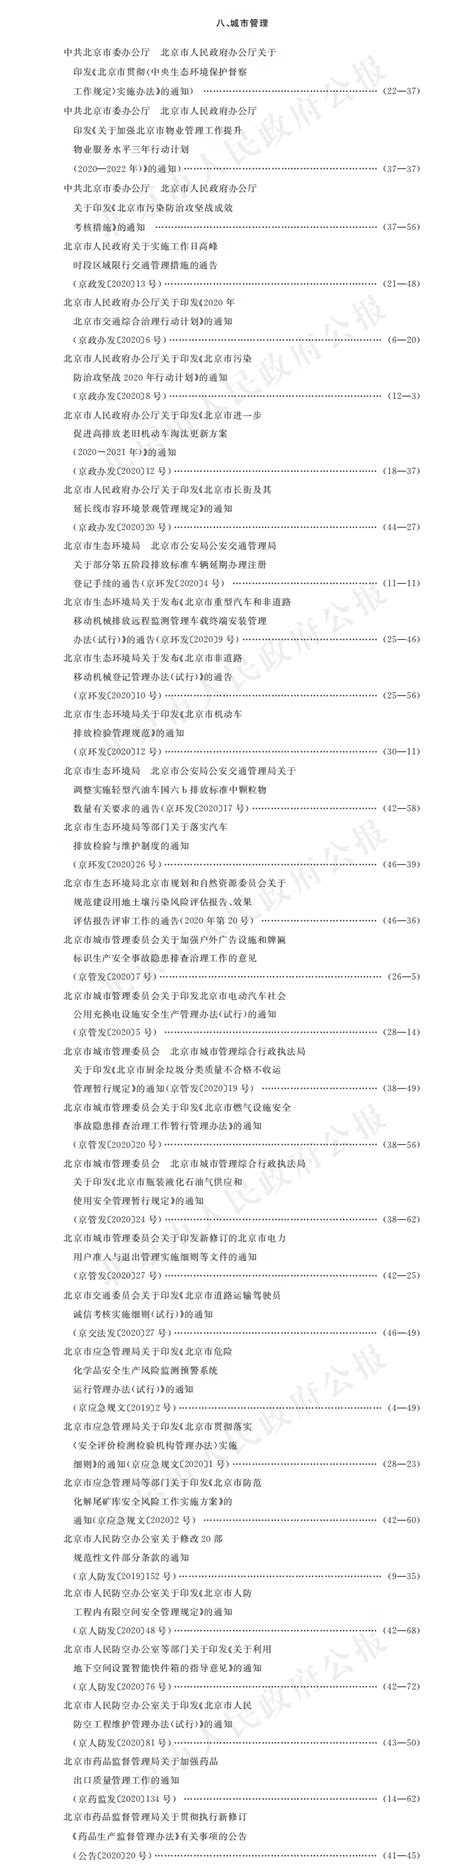 北京市人民政府关于实施城市更新行动的指导意见（京政发〔2021〕10号）.pdf - 国土人